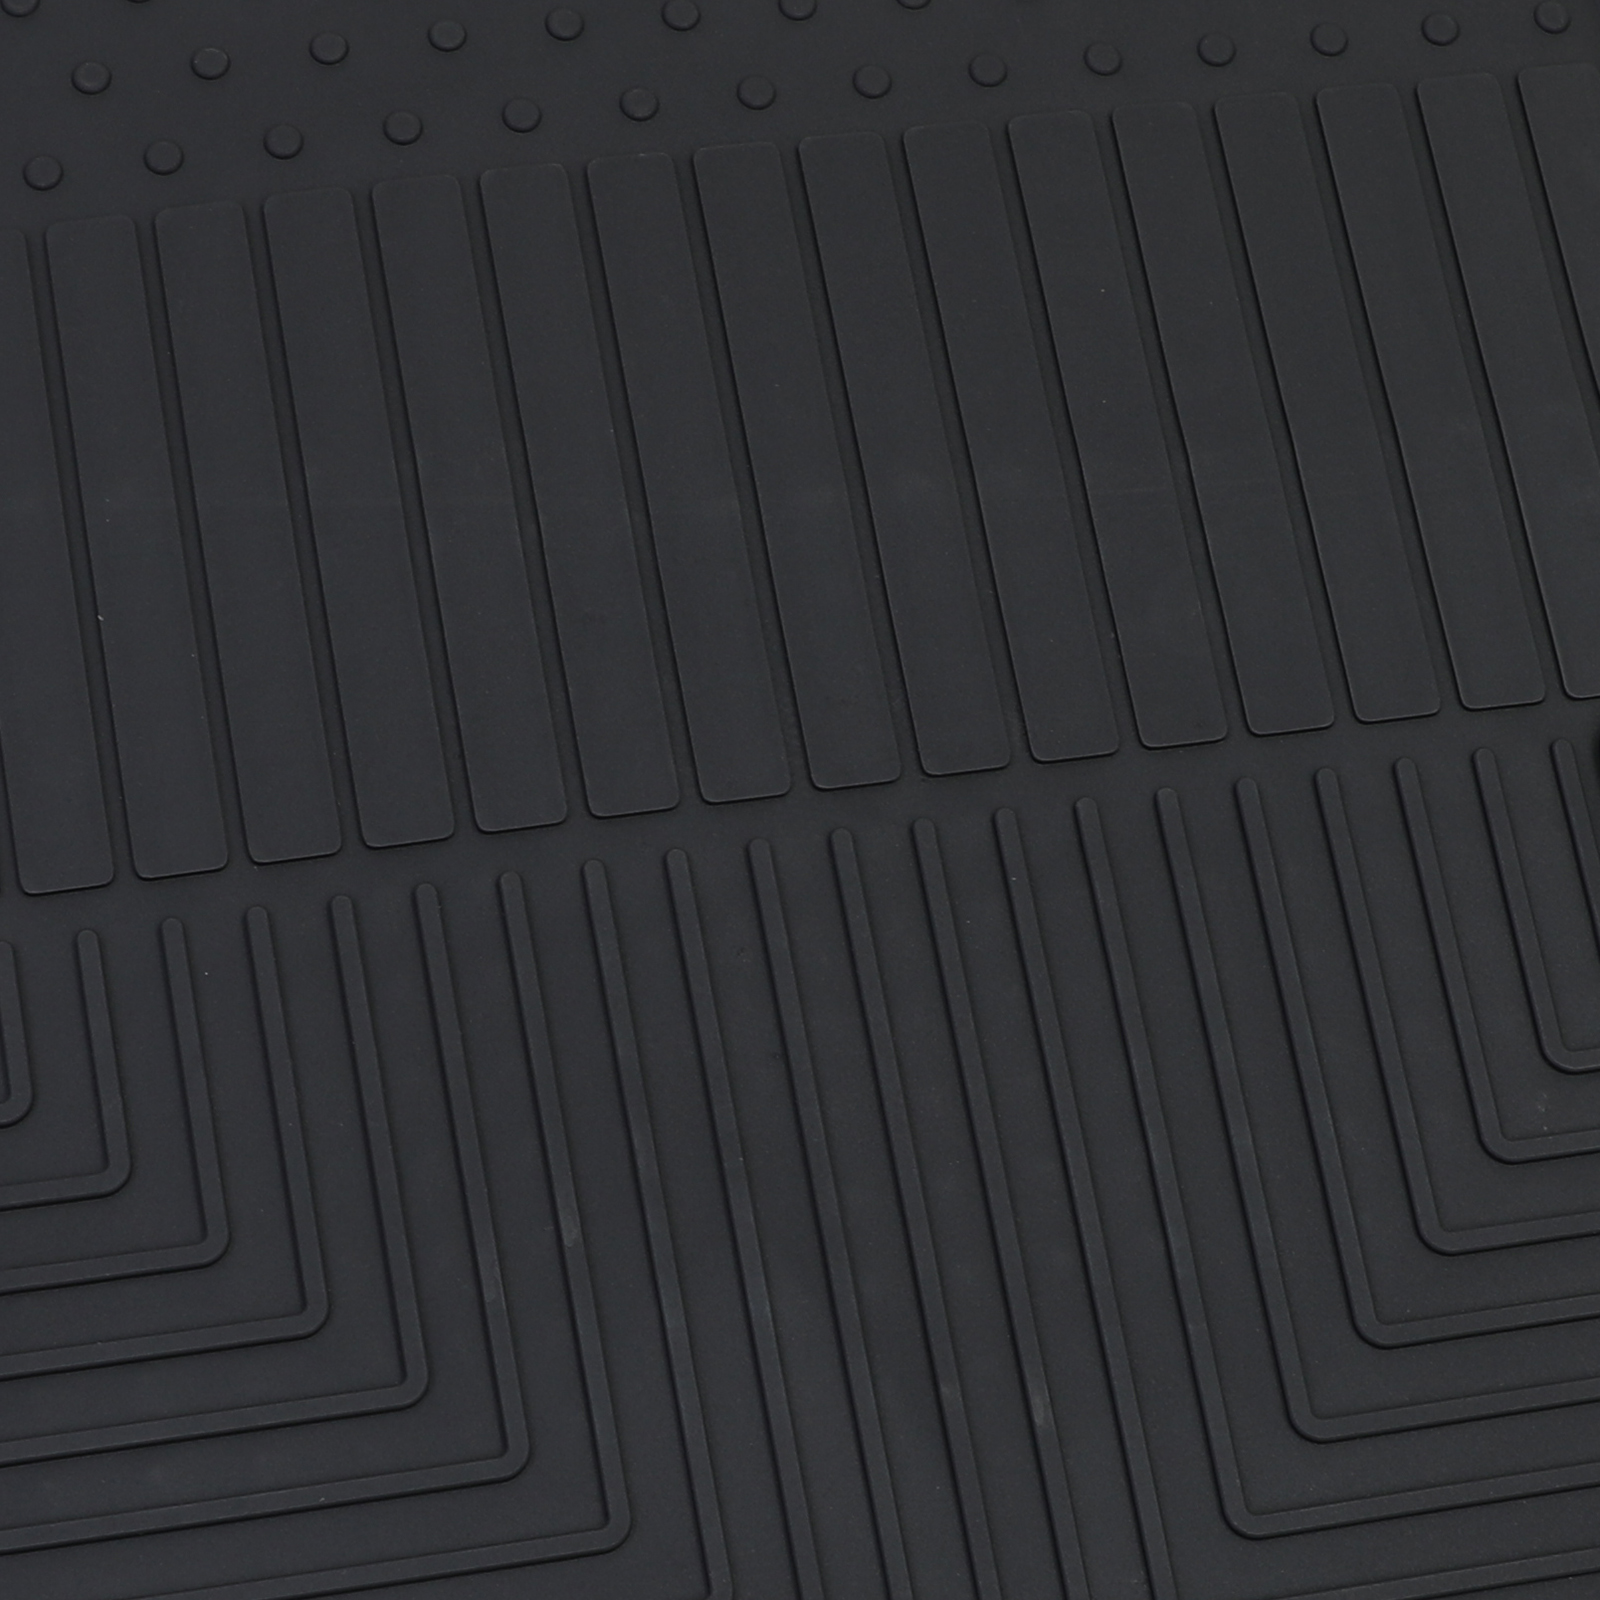 Auto Gummi Fußmatten Schwarz Premium Set für Kia Rio UB 11-16 kaufen